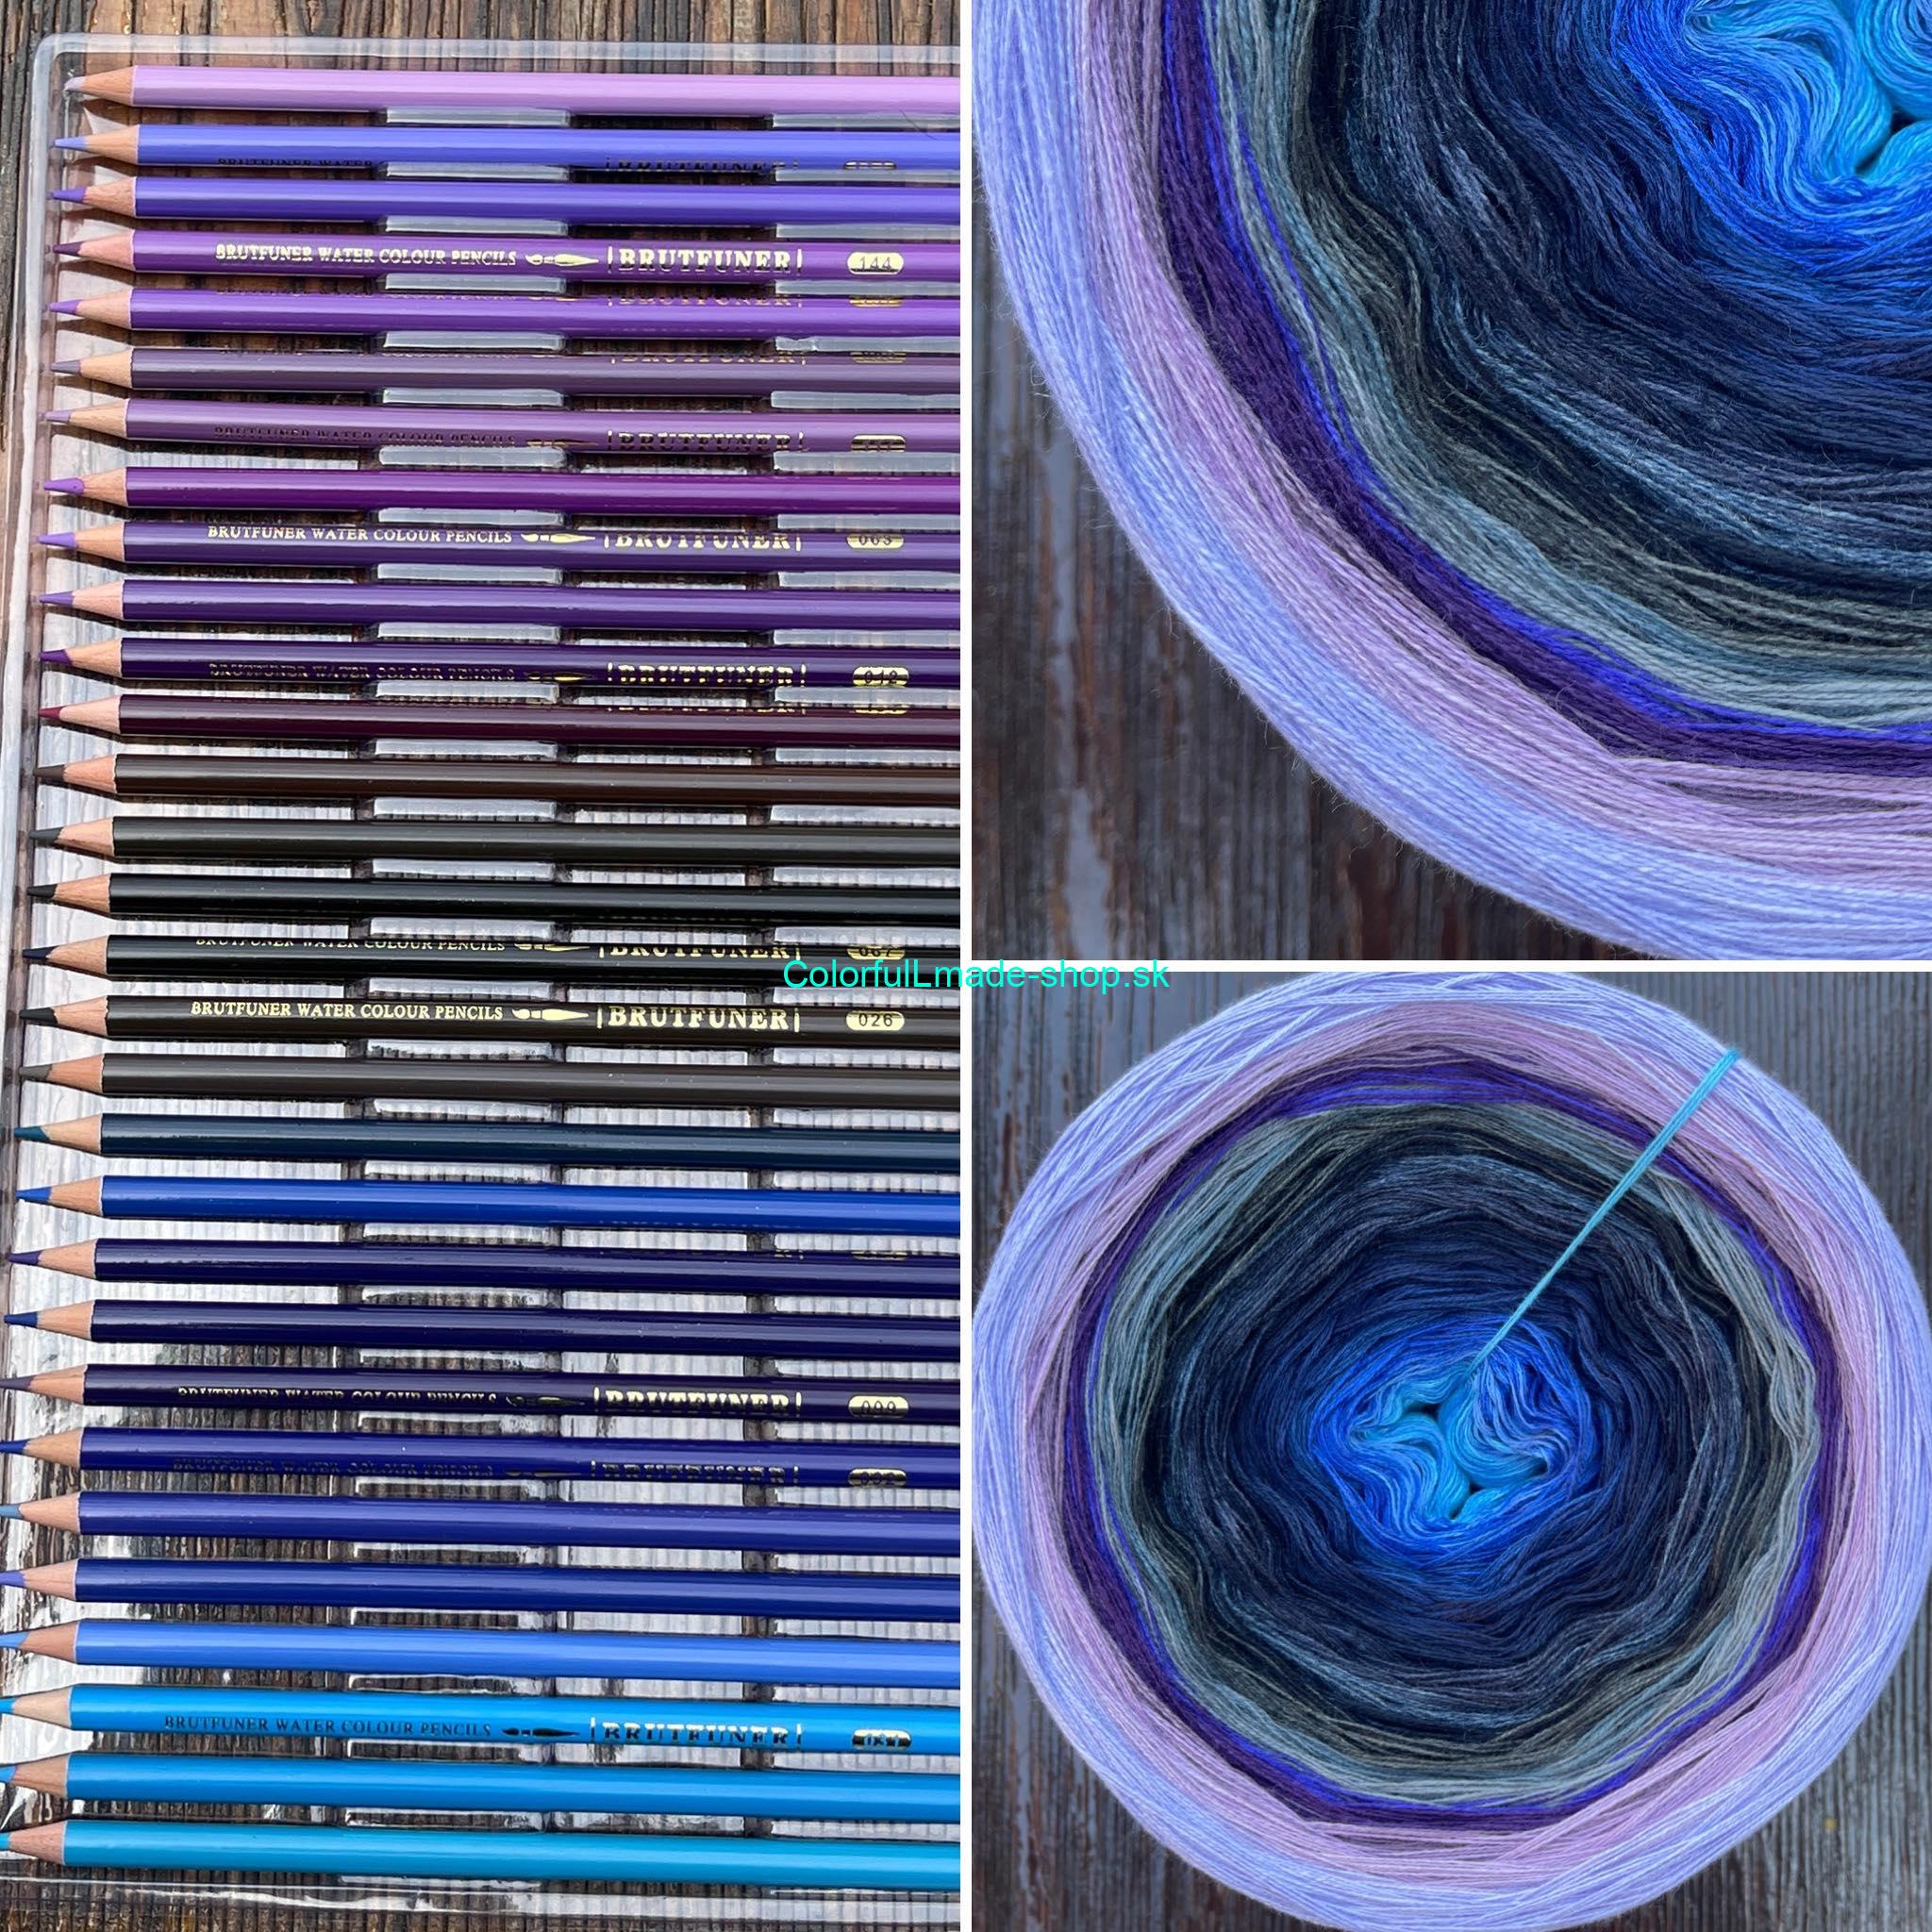 Magic Beauty - 20 Colors - Pencils XIX. 3ply / 1800m